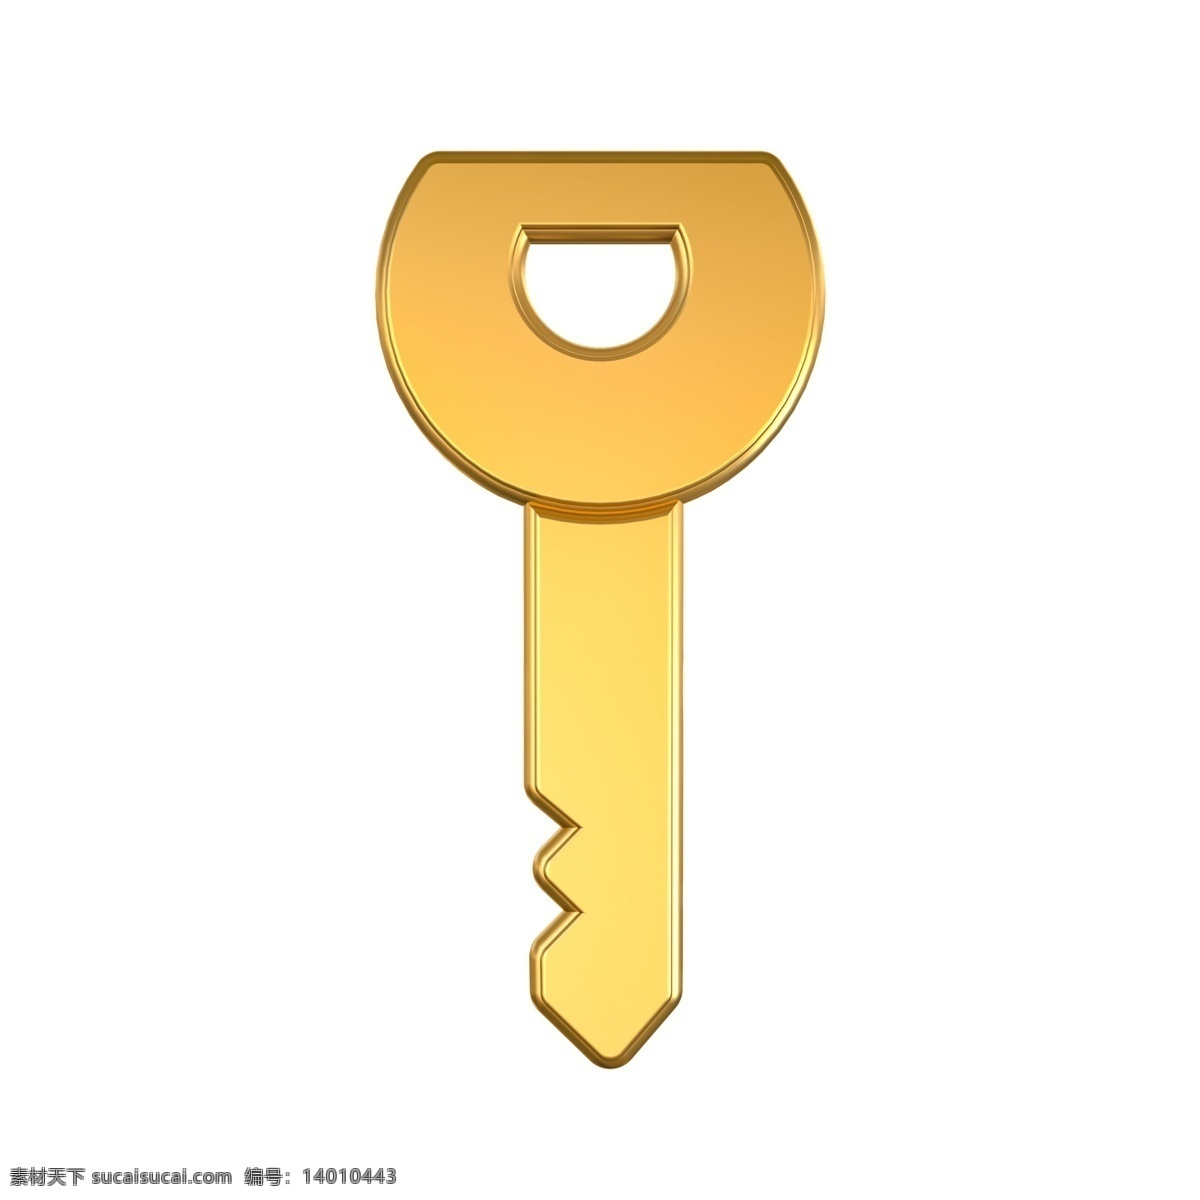 3d 金属 光泽 钥匙 装饰 c4d 立体 金属质感 钥匙装饰 金色 金属光泽 质感 平面海报配图 金钥匙